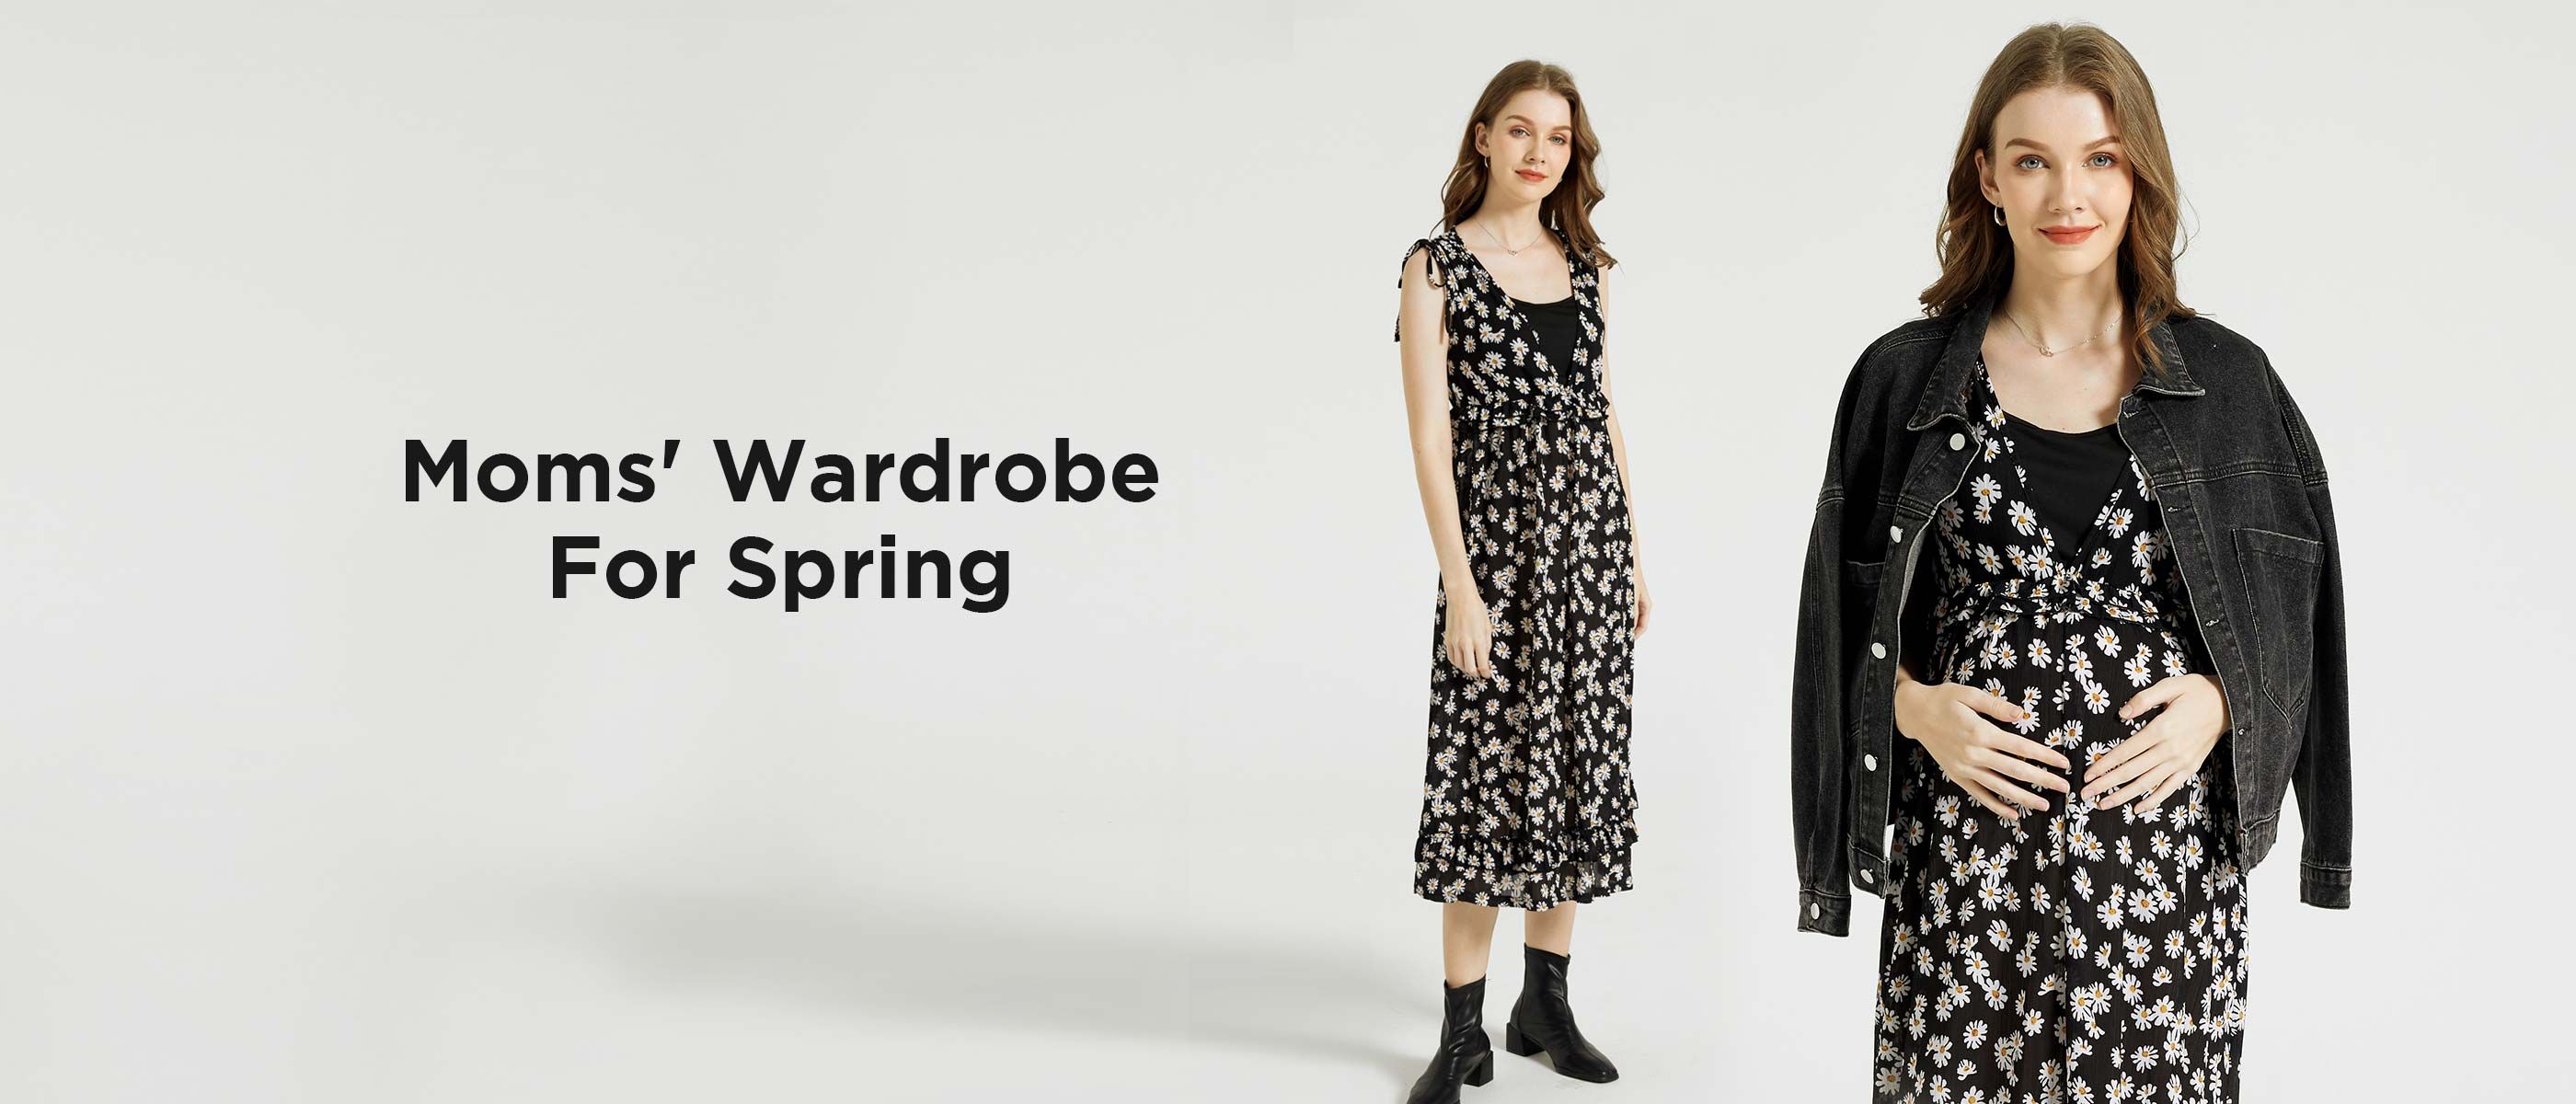 Moms' Wardrobe For Spring